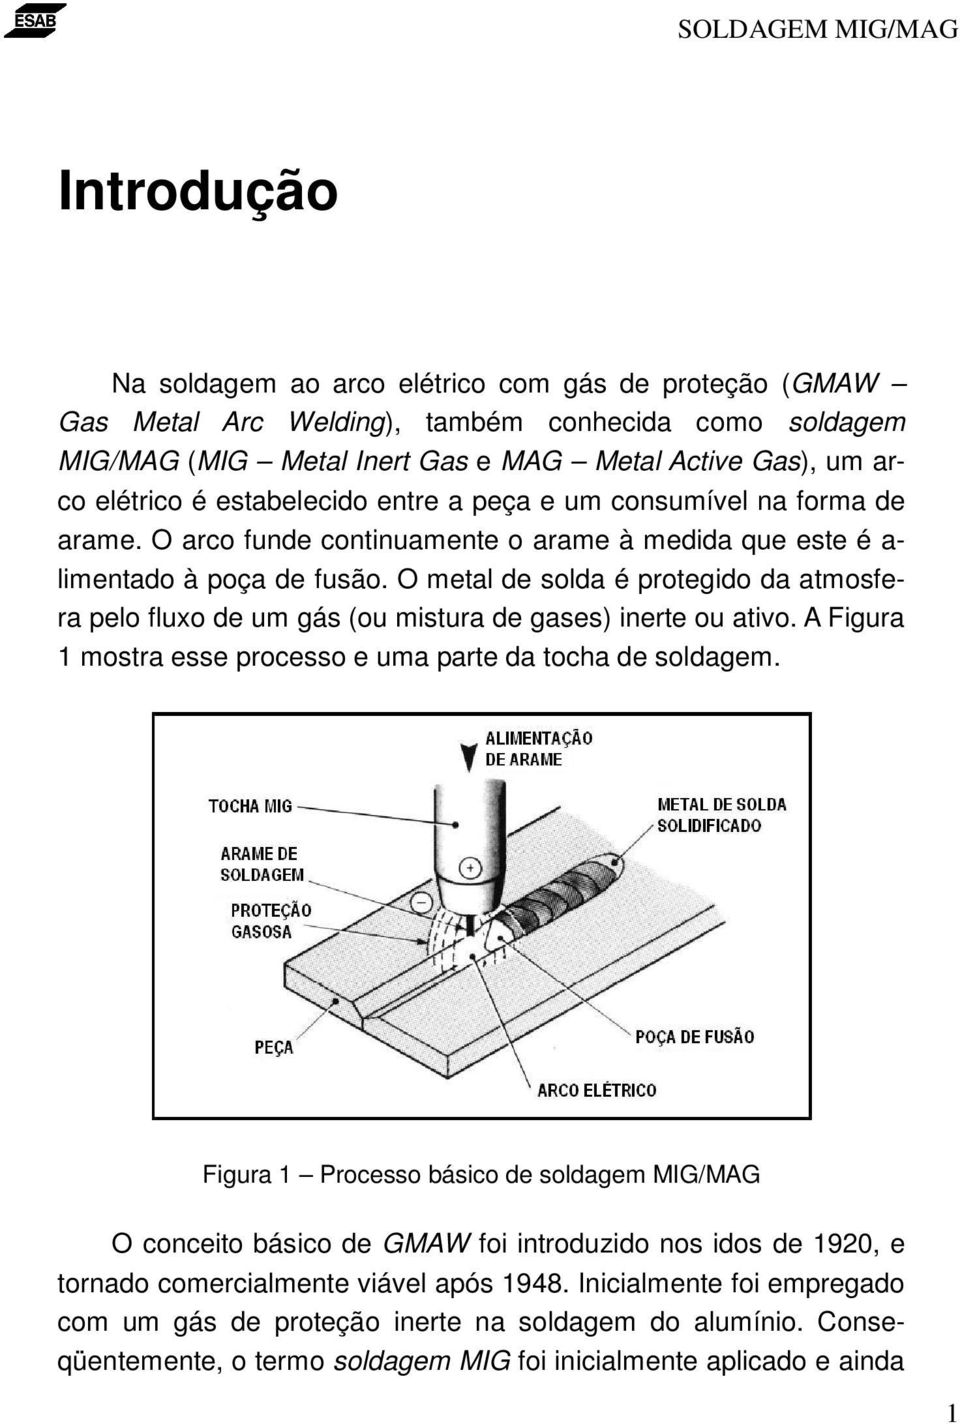 O metal de solda é protegido da atmosfera pelo fluxo de um gás (ou mistura de gases) inerte ou ativo. A Figura 1 mostra esse processo e uma parte da tocha de soldagem.